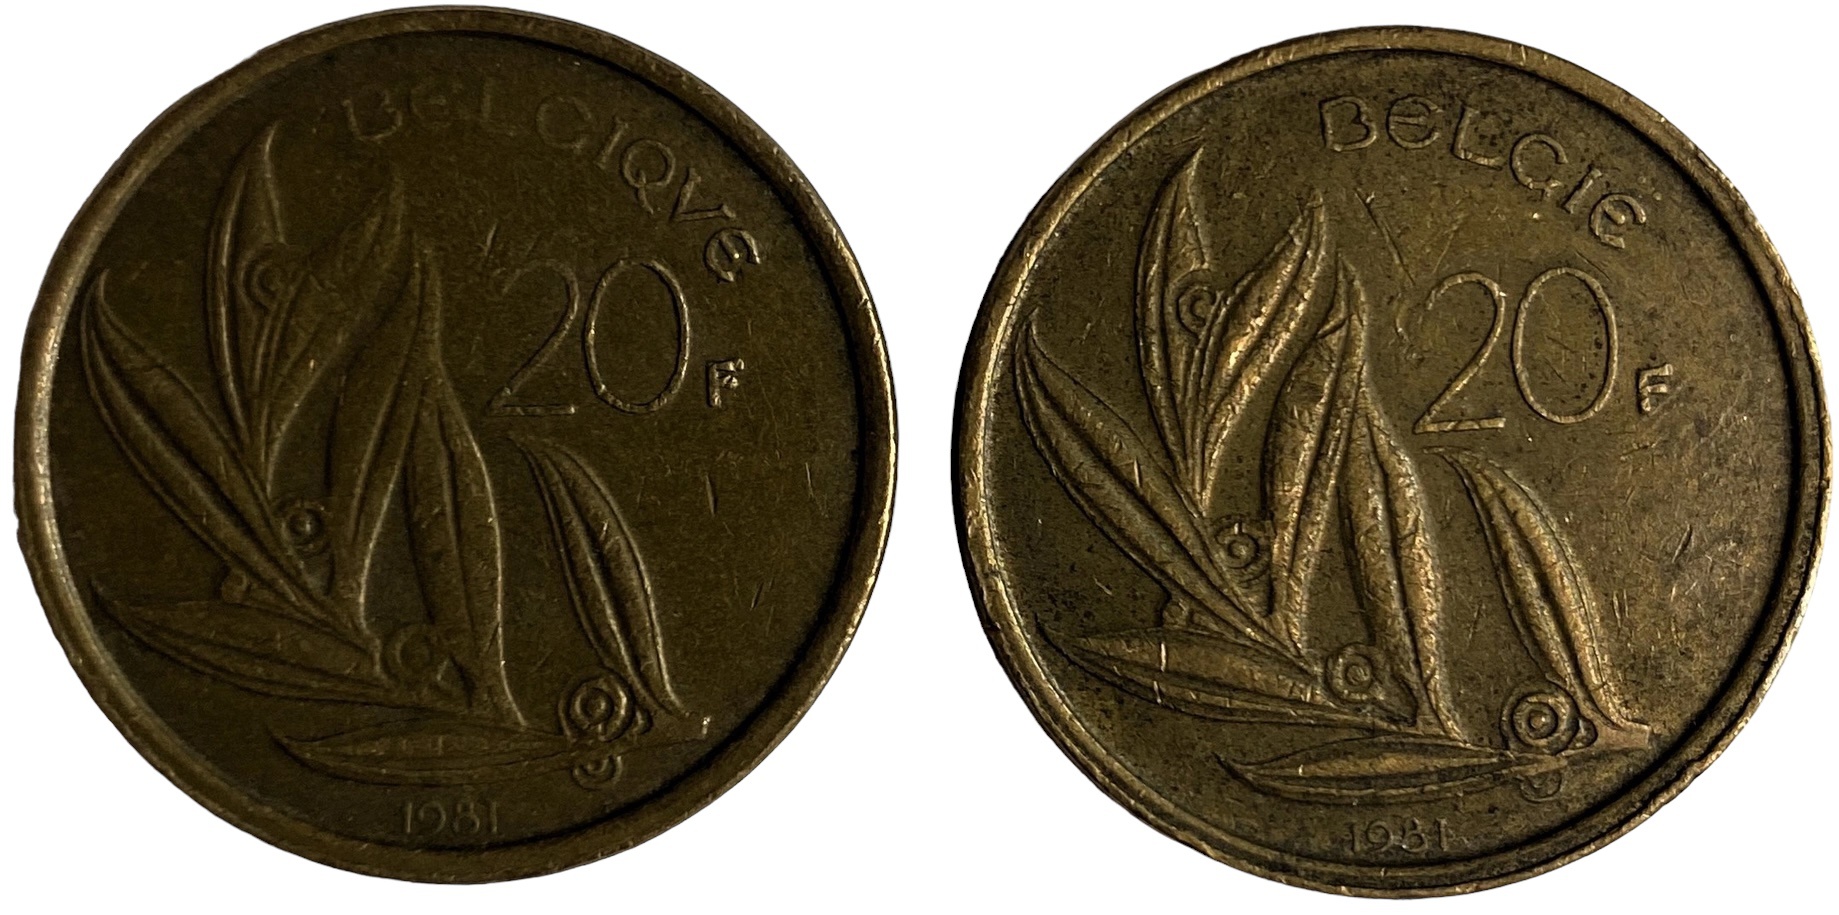 Иностранная монета 20 франков 1981 год Бельгия